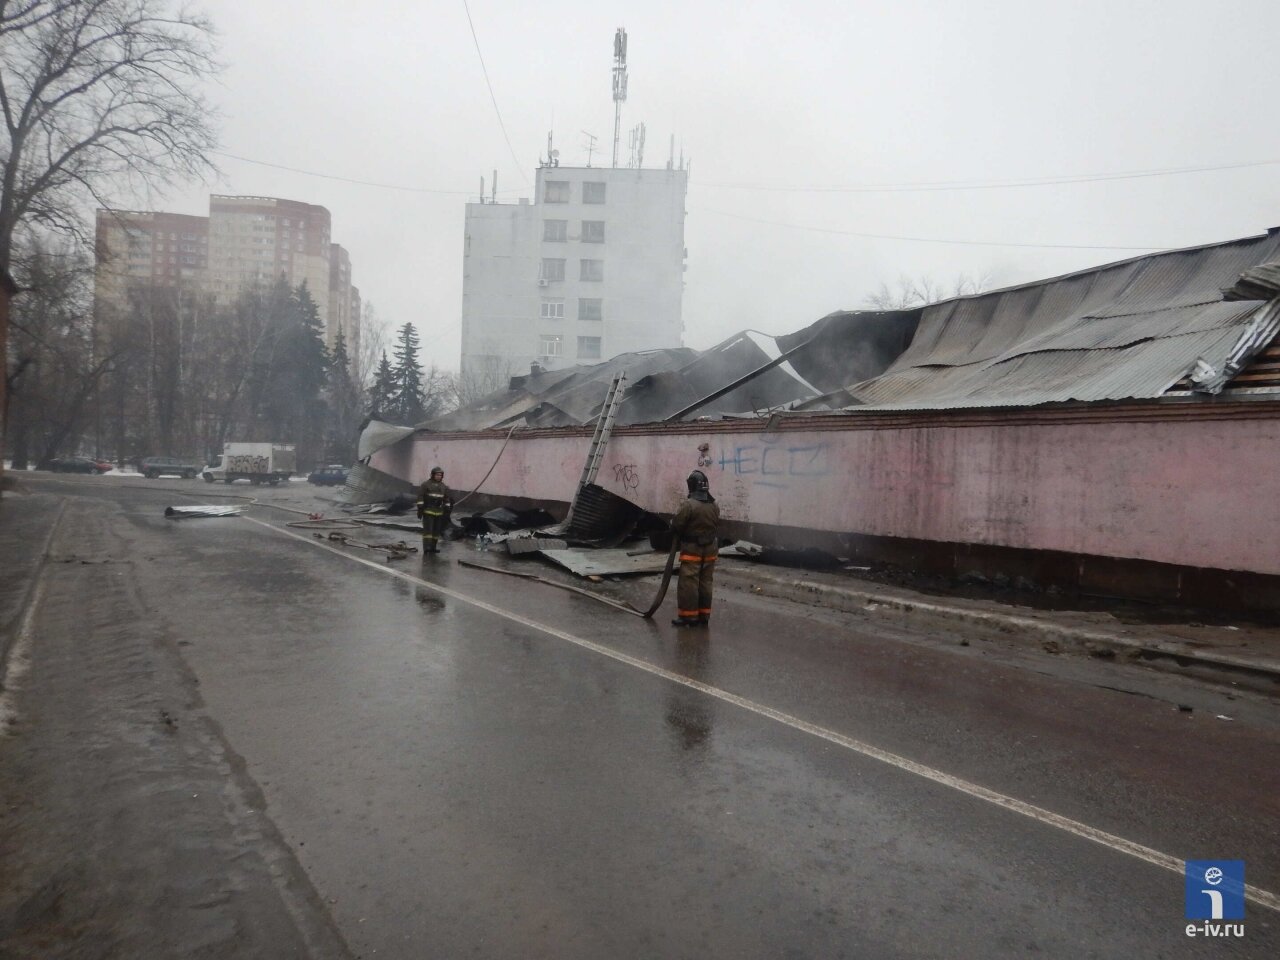 Пожарные до сих пор работают на месте происшествия, пожар на текстильной фабрике, Фабричный проезд, Ивантеевка